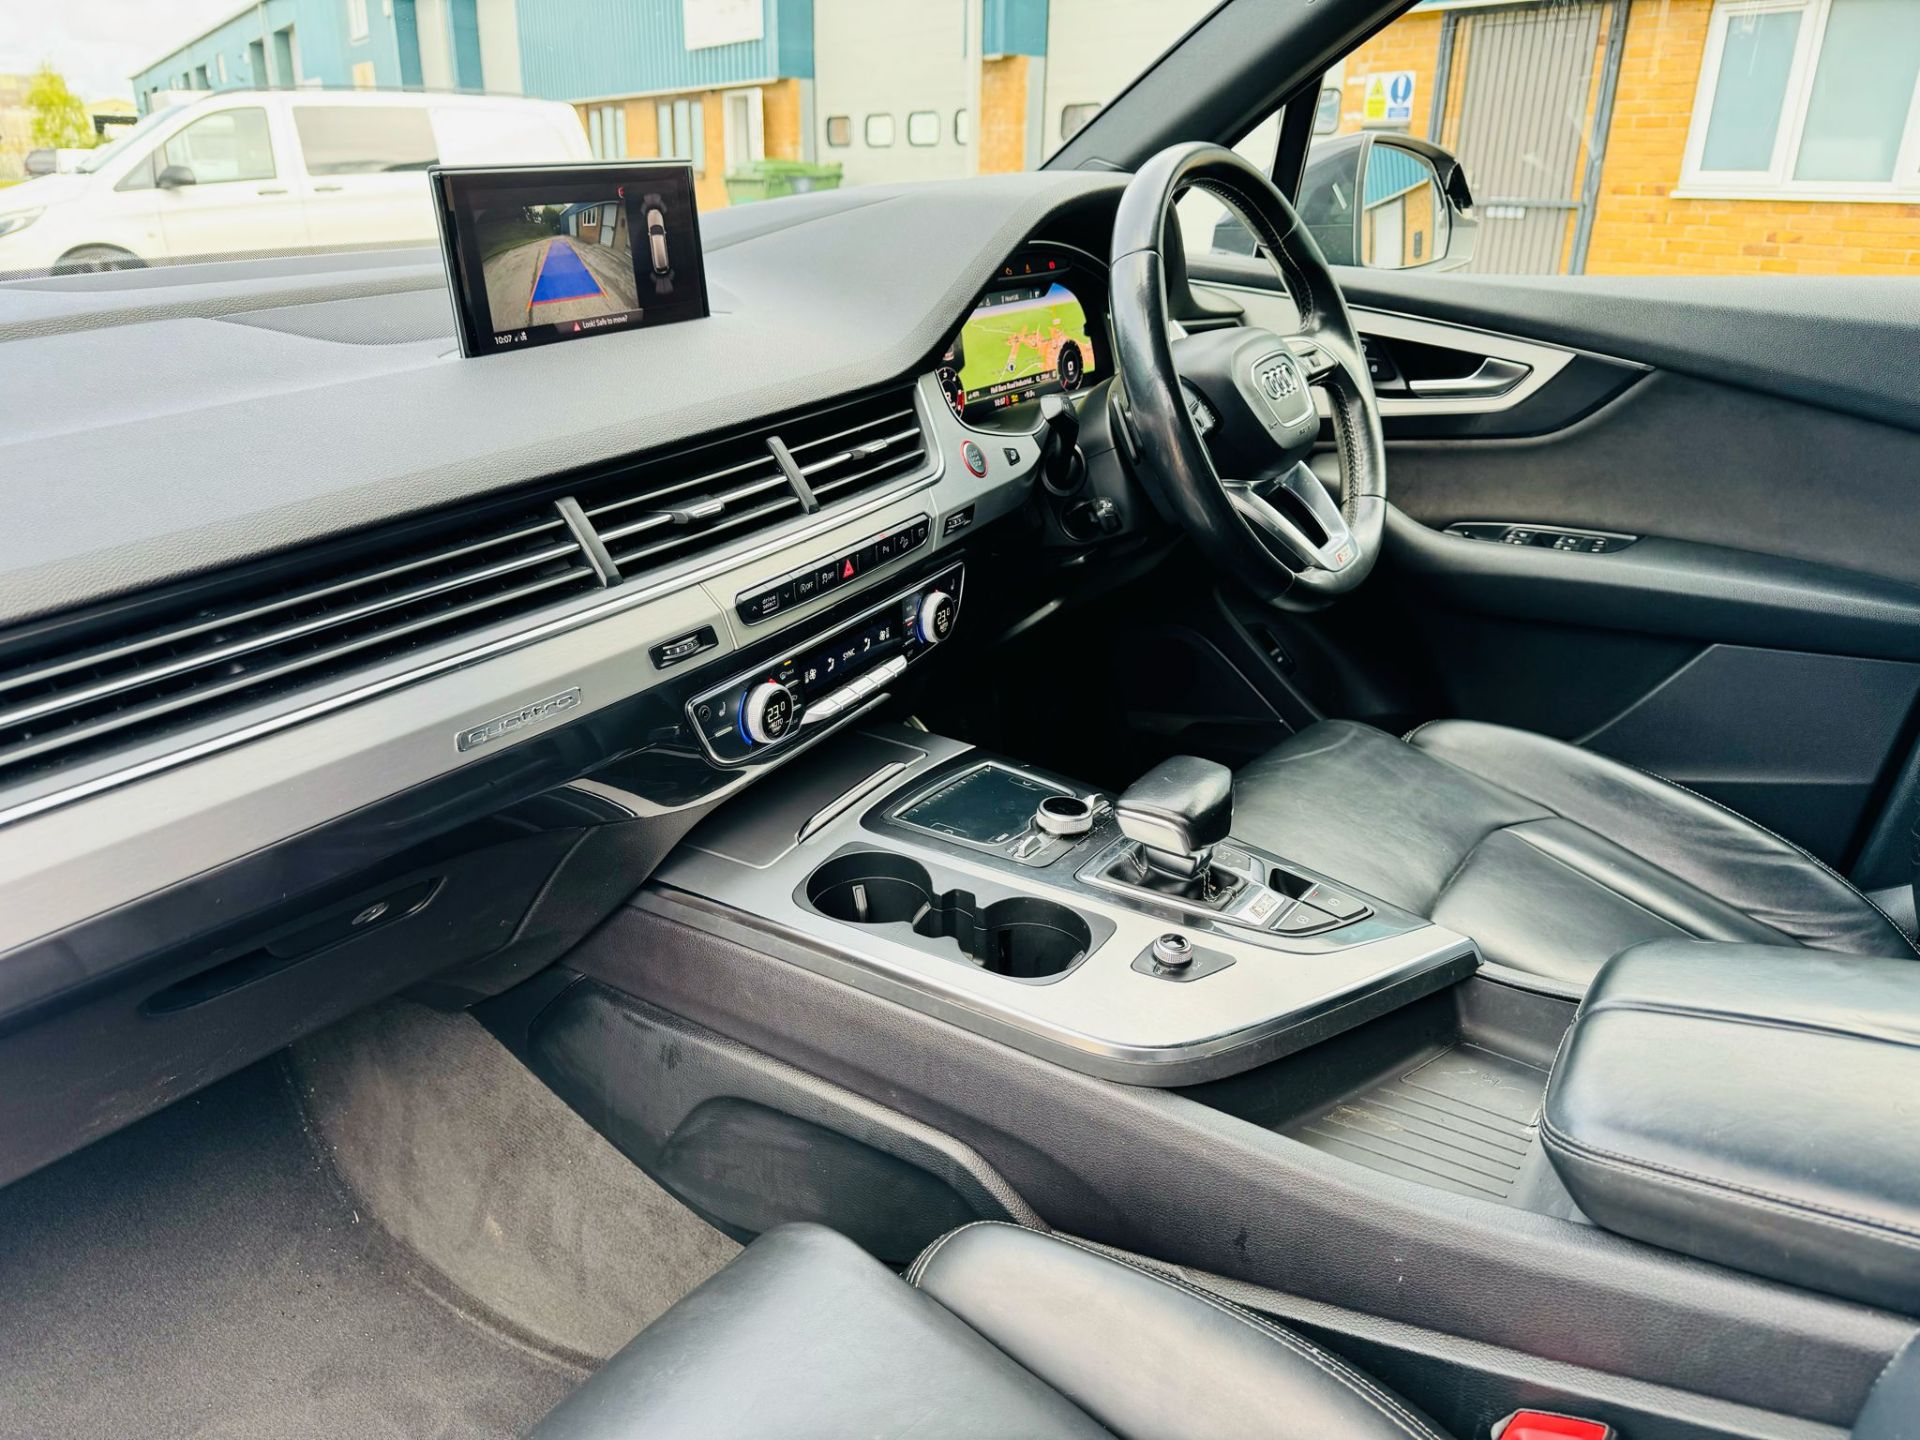 Audi SQ7 4.0TDI V8 Quattro 430BHP "SQ7 EDITION" Auto (7 Seats) 2018 18Reg -Sat Nav -Reversing camera - Image 11 of 37